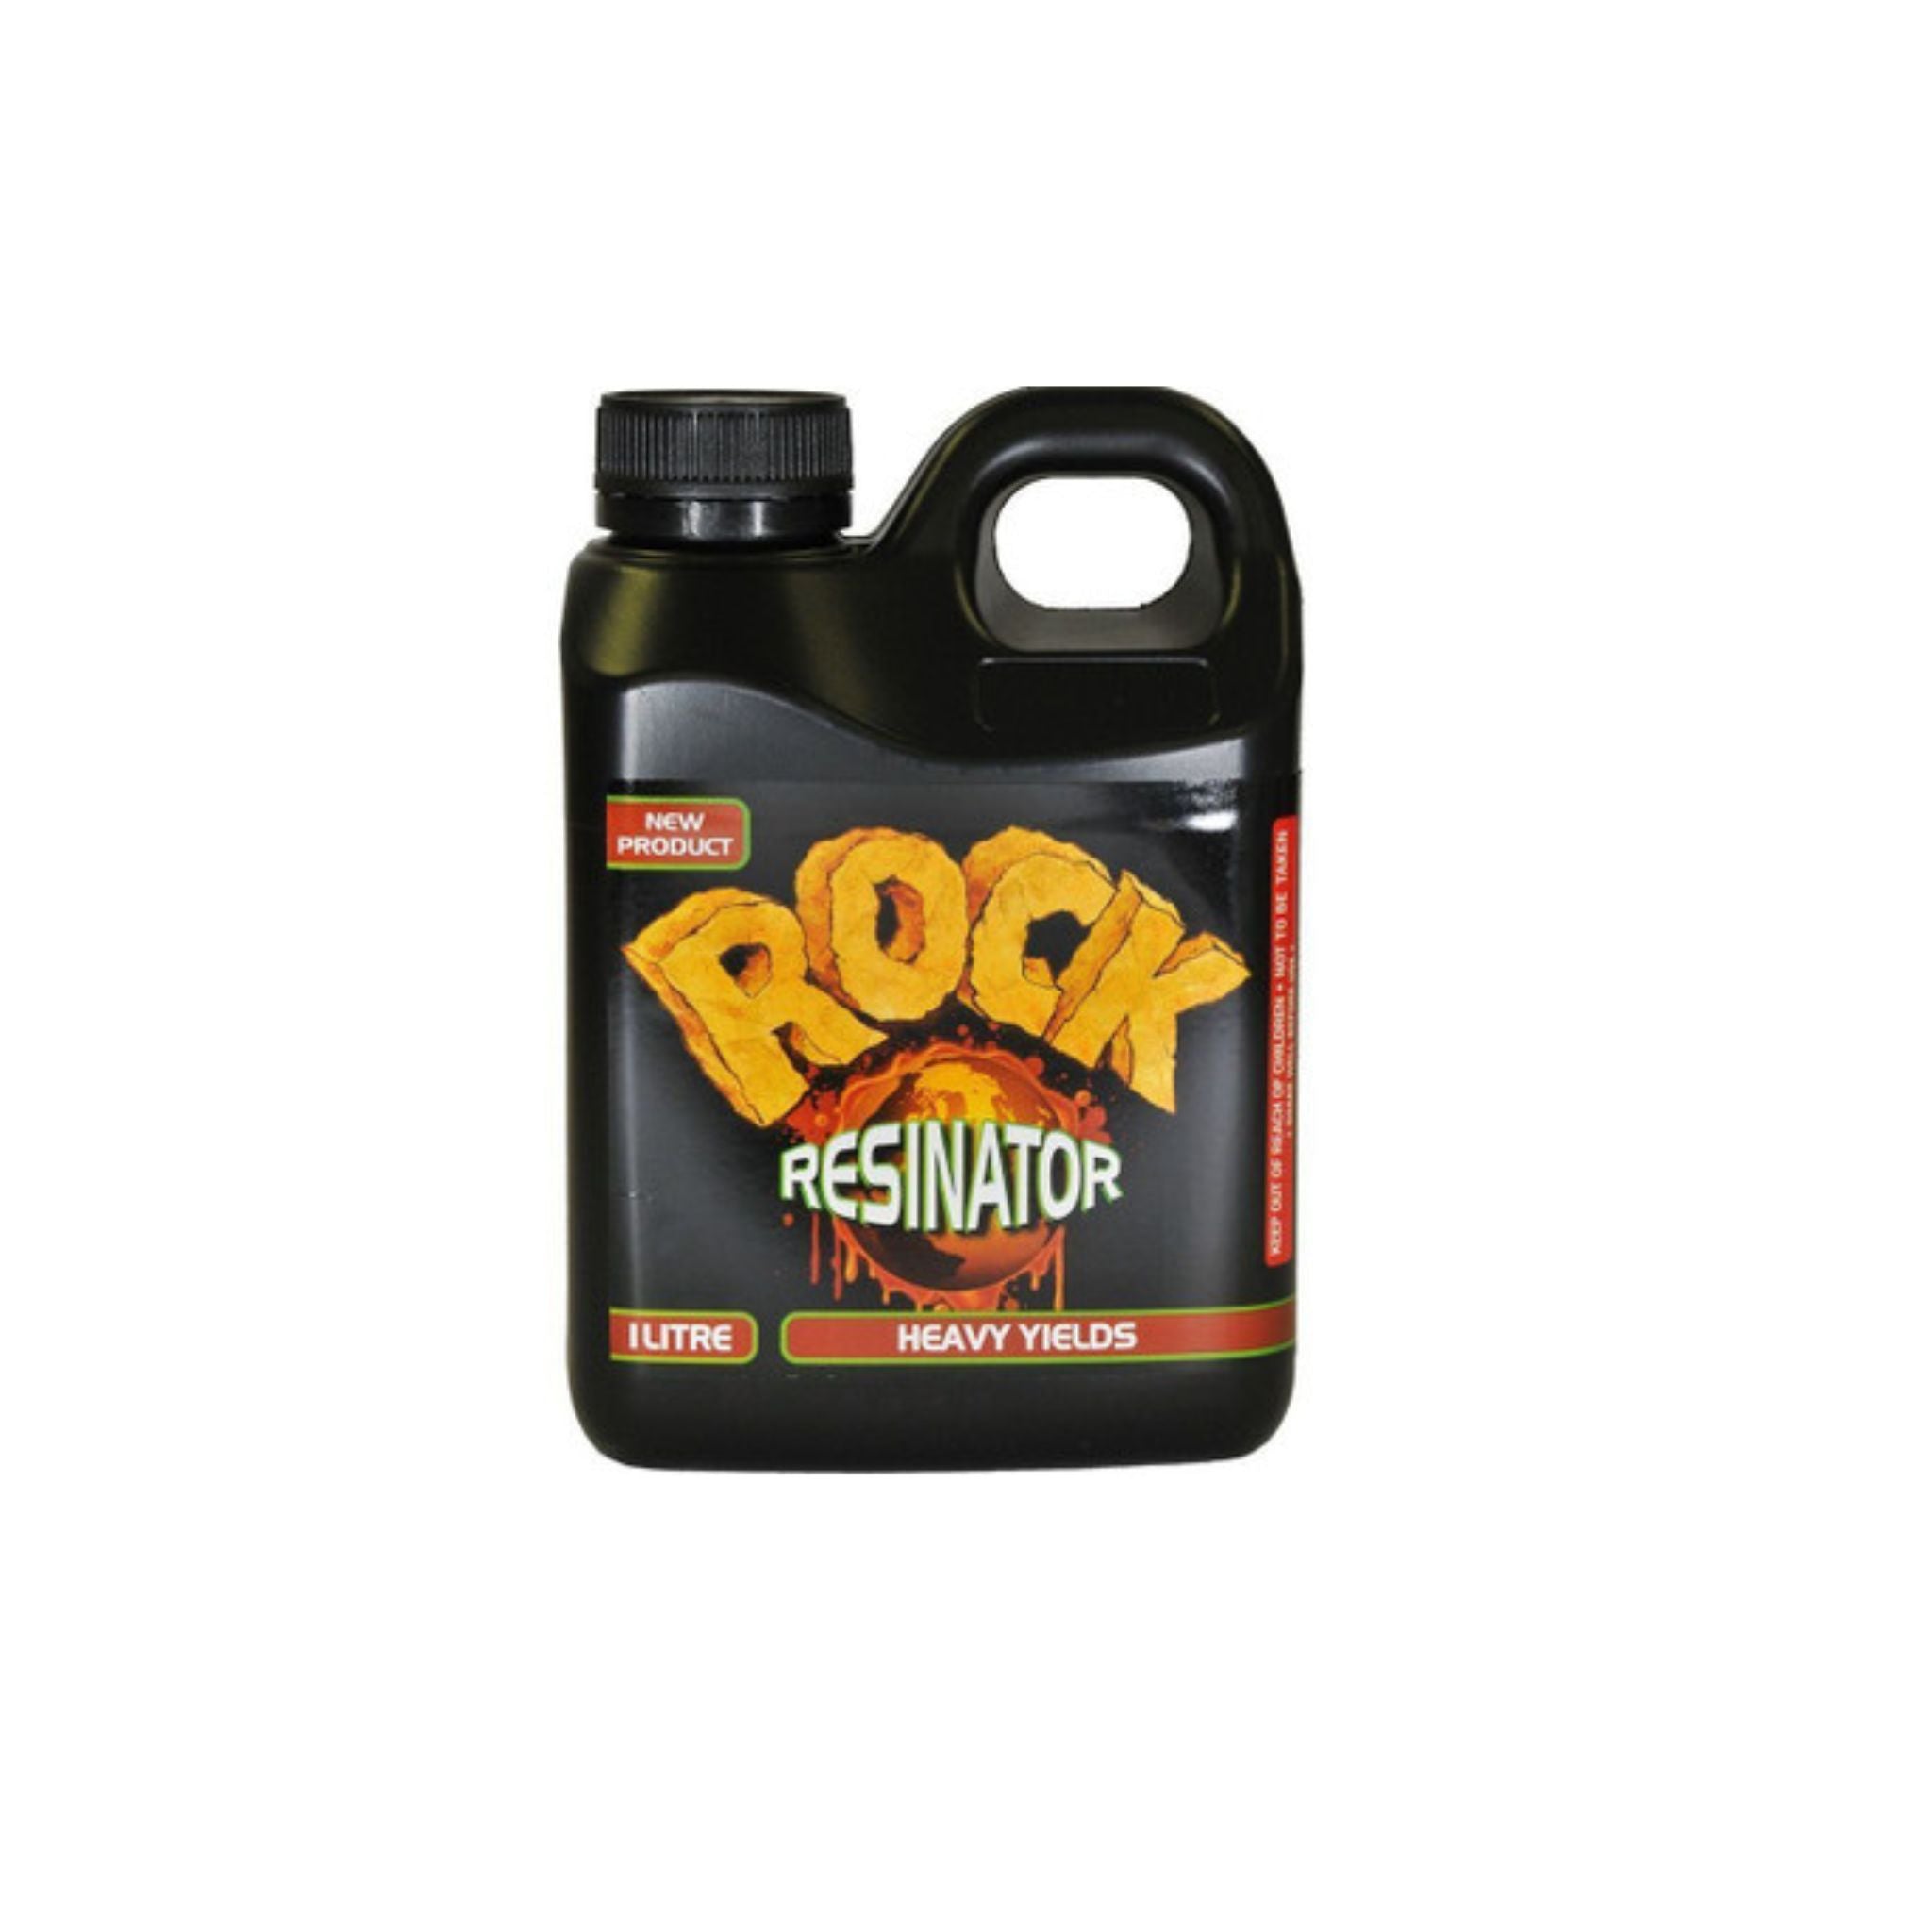 Rock Resinator - Heavy yields